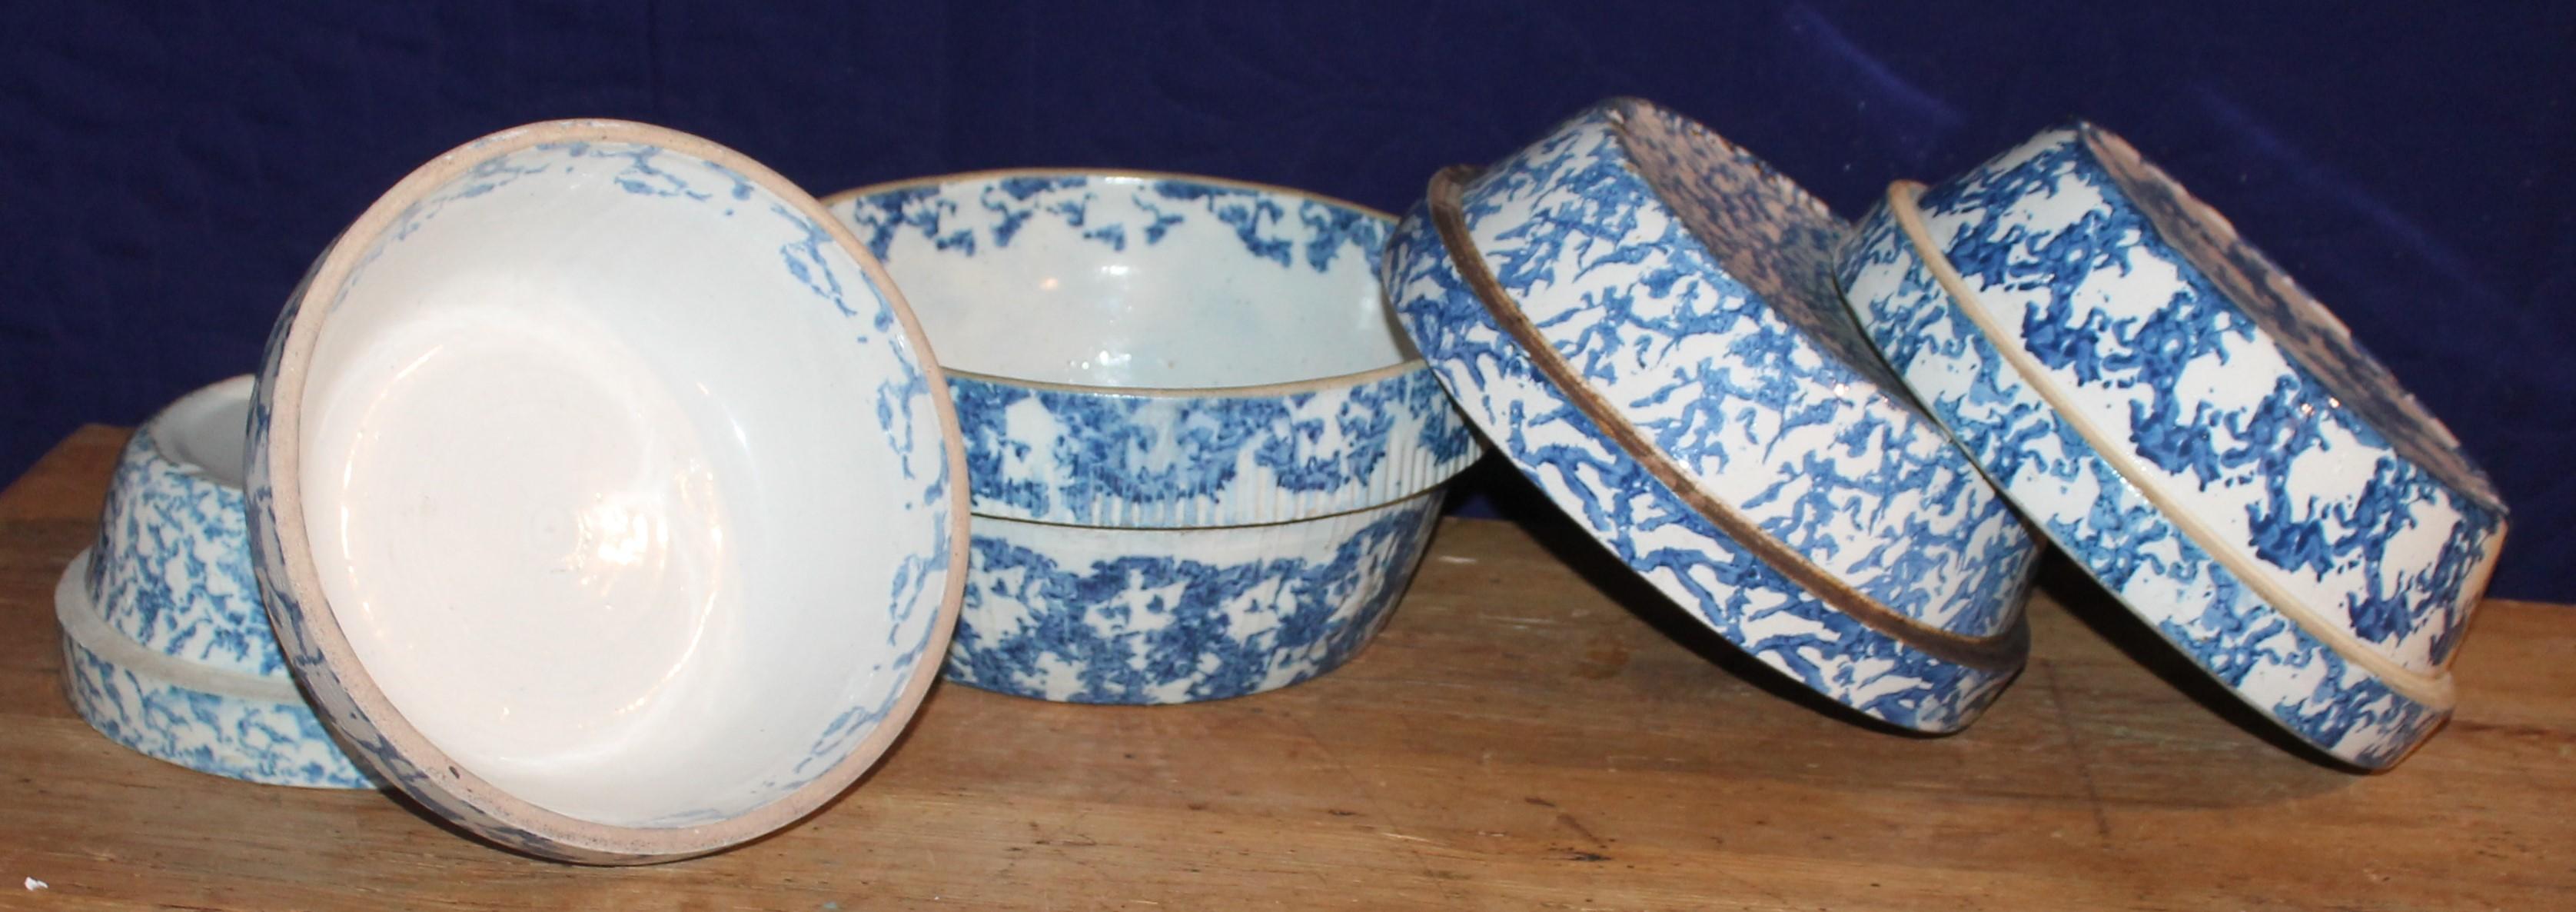 Collection de cinq bols à mélange en éponge du 19e siècle. Cette belle collection de bols en poterie à éponge bleue est en bon état et est vendue en tant qu'ensemble.